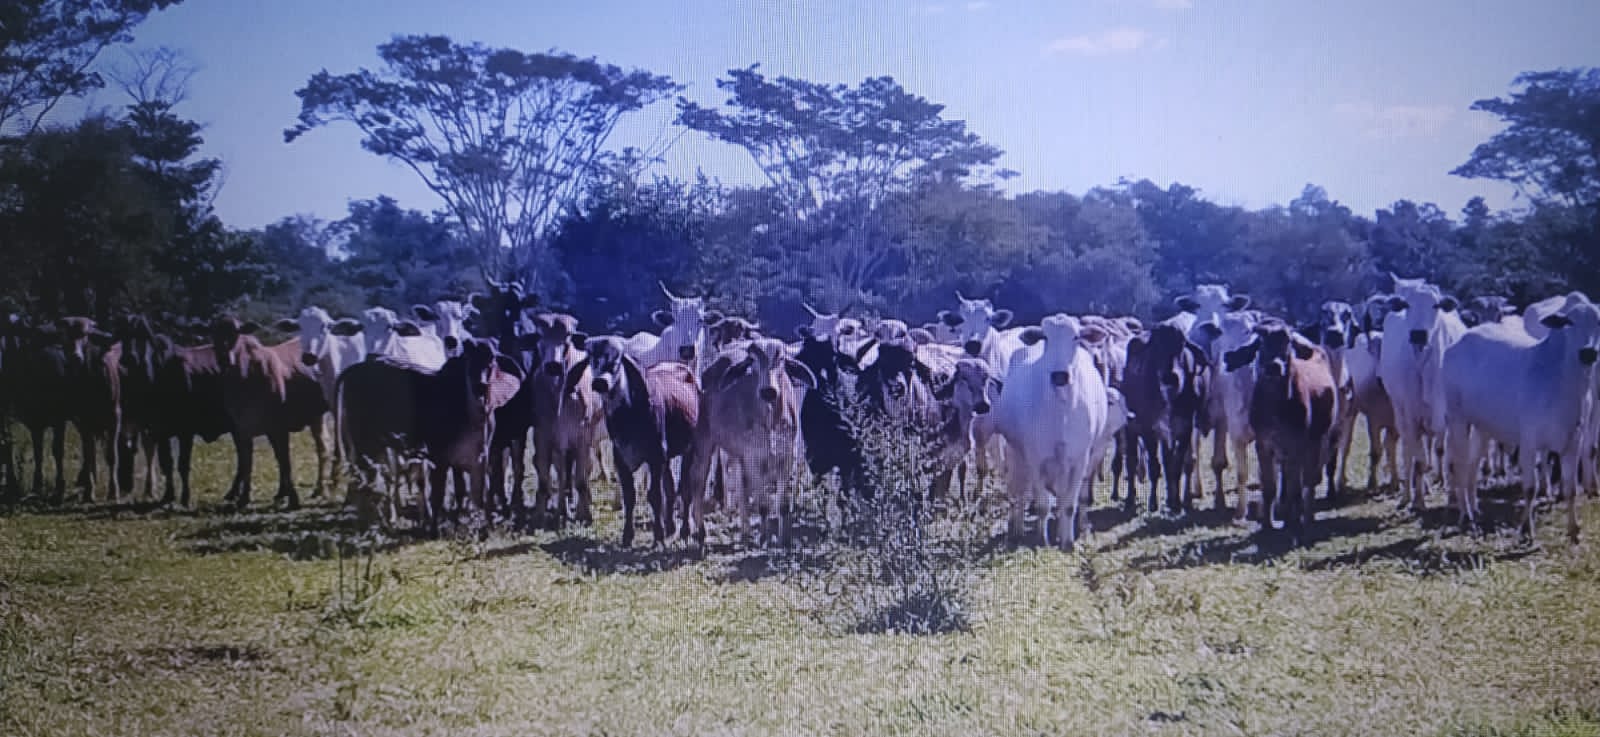 Dono sítio é multado em R$ 35 mil por manter gado degradando área protegida